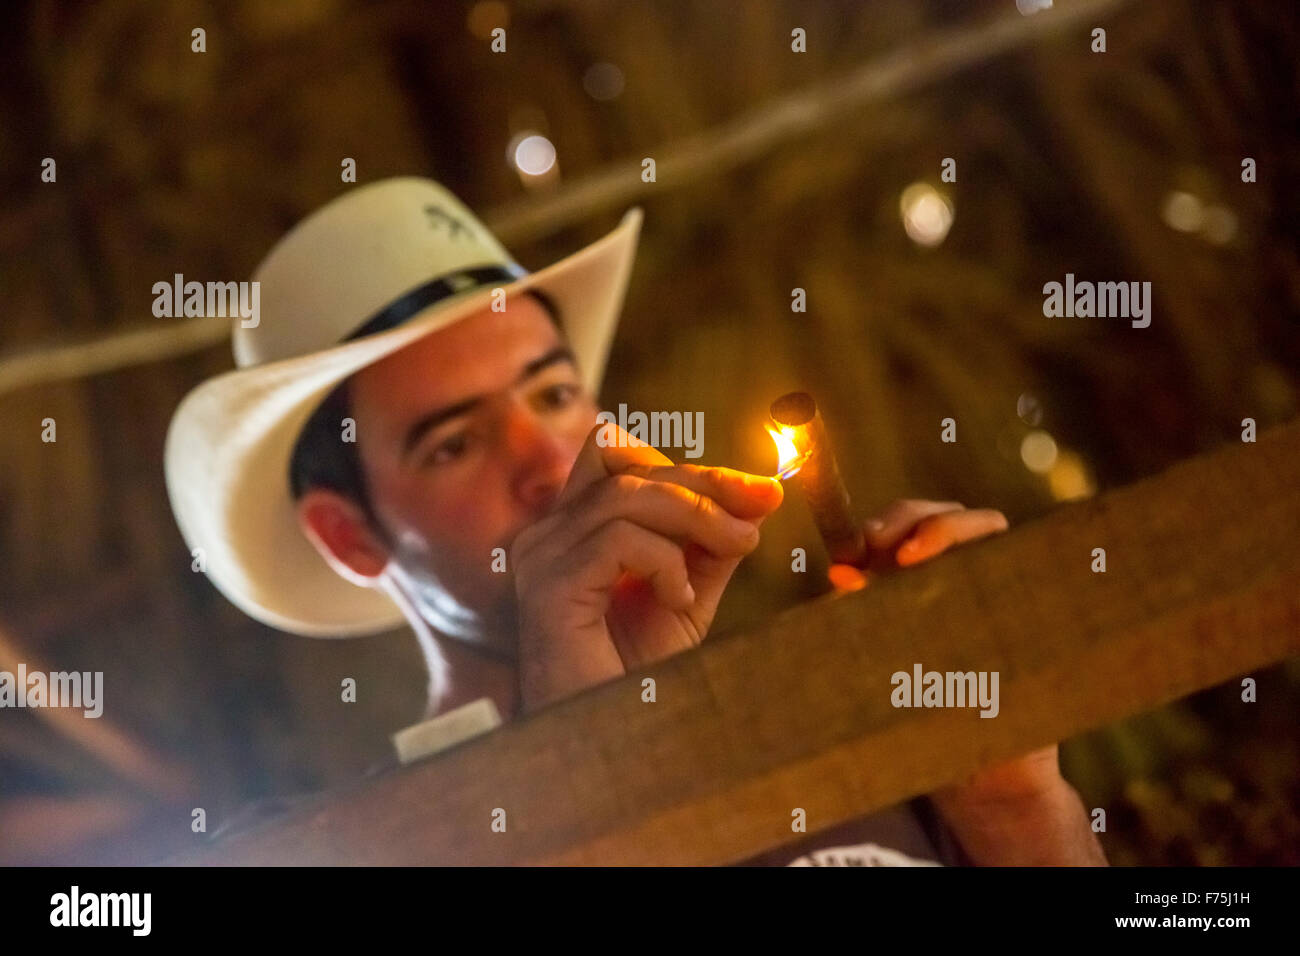 Productores de Tabaco, el tabaco agricultor Luis Alvares Rodrigues hombre encendió un habano, granja de tabaco en Viñales, Viñales, Cuba Foto de stock